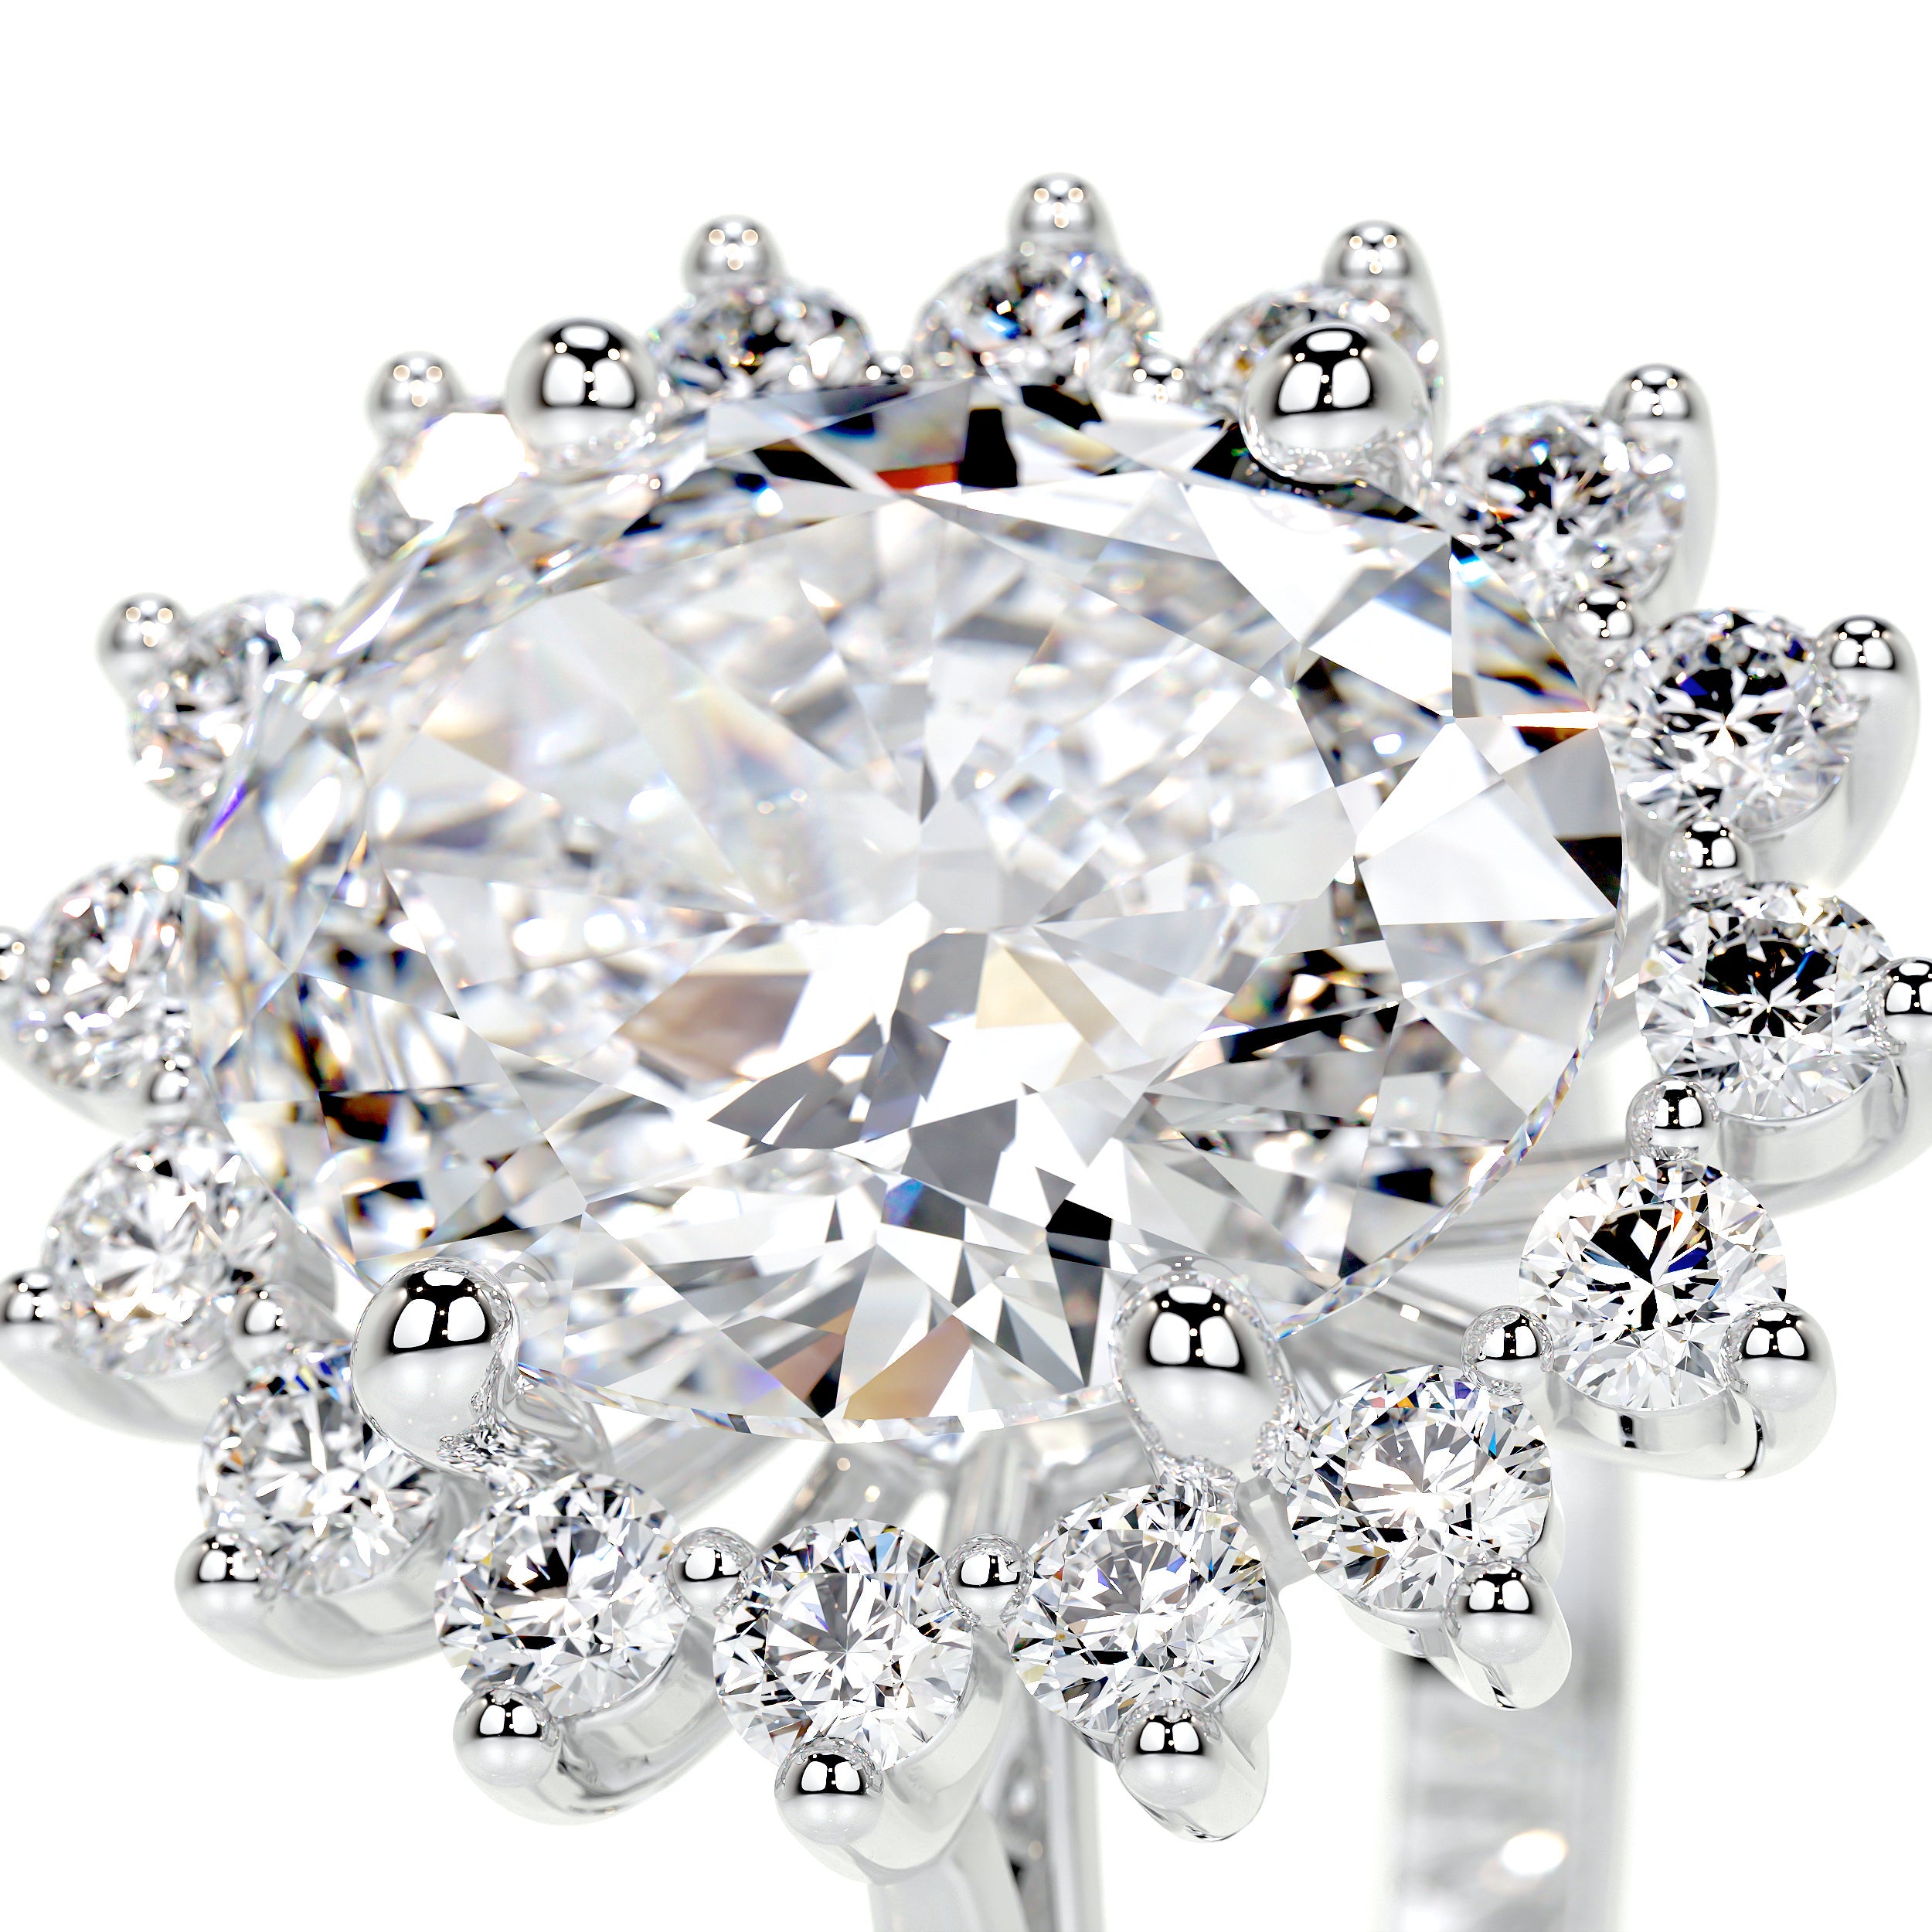 Lyn Lab Grown Diamond Ring   (4.5 Carat) - 18K White Gold